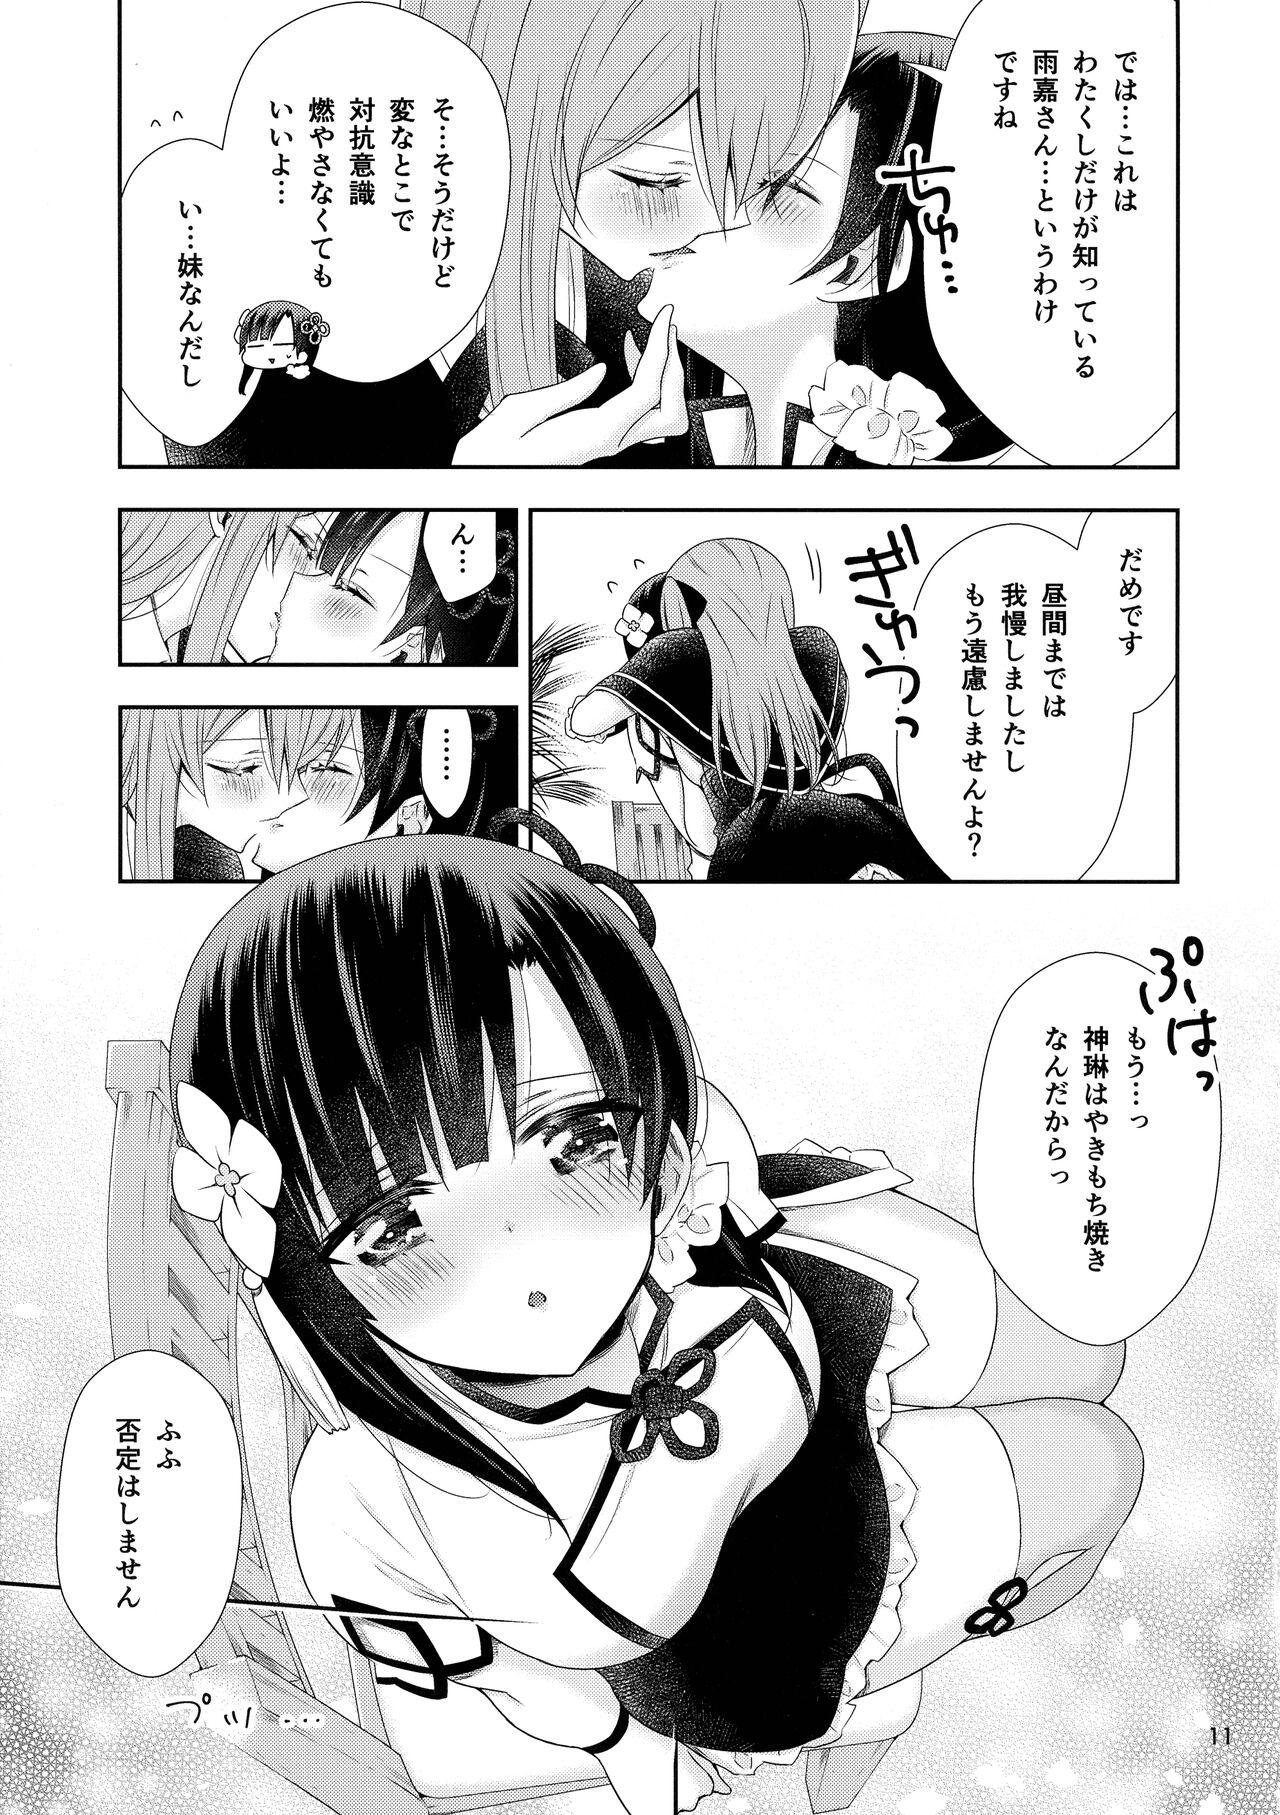 Loira Kami Rin ga ame Yoshimi ni Yaki Mochi o Yaku Hanashi - Assault lily Facebook - Page 11